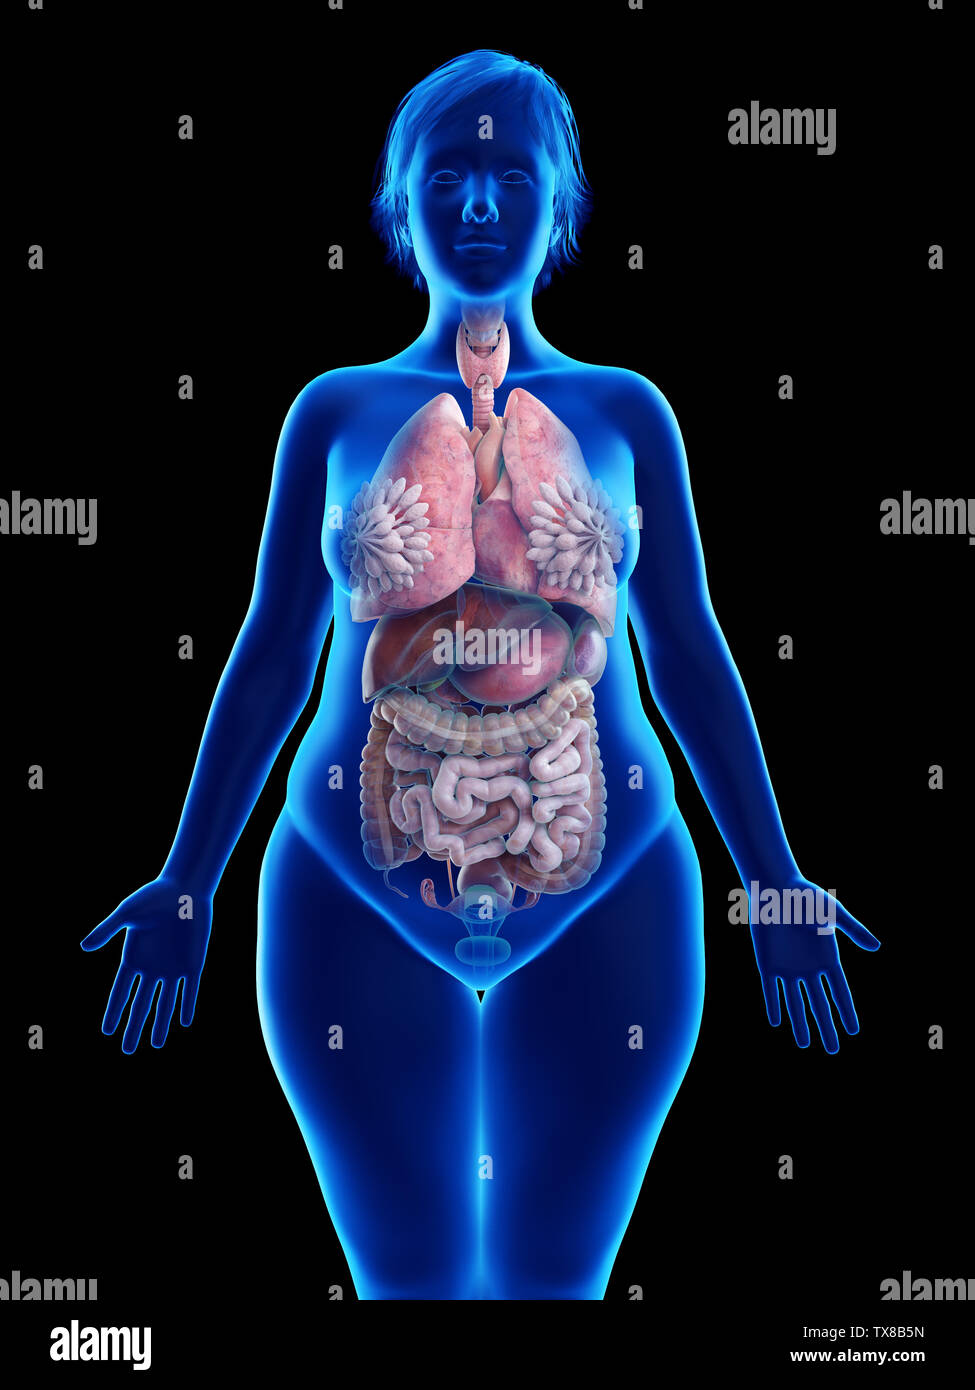 Анатомия женского тела